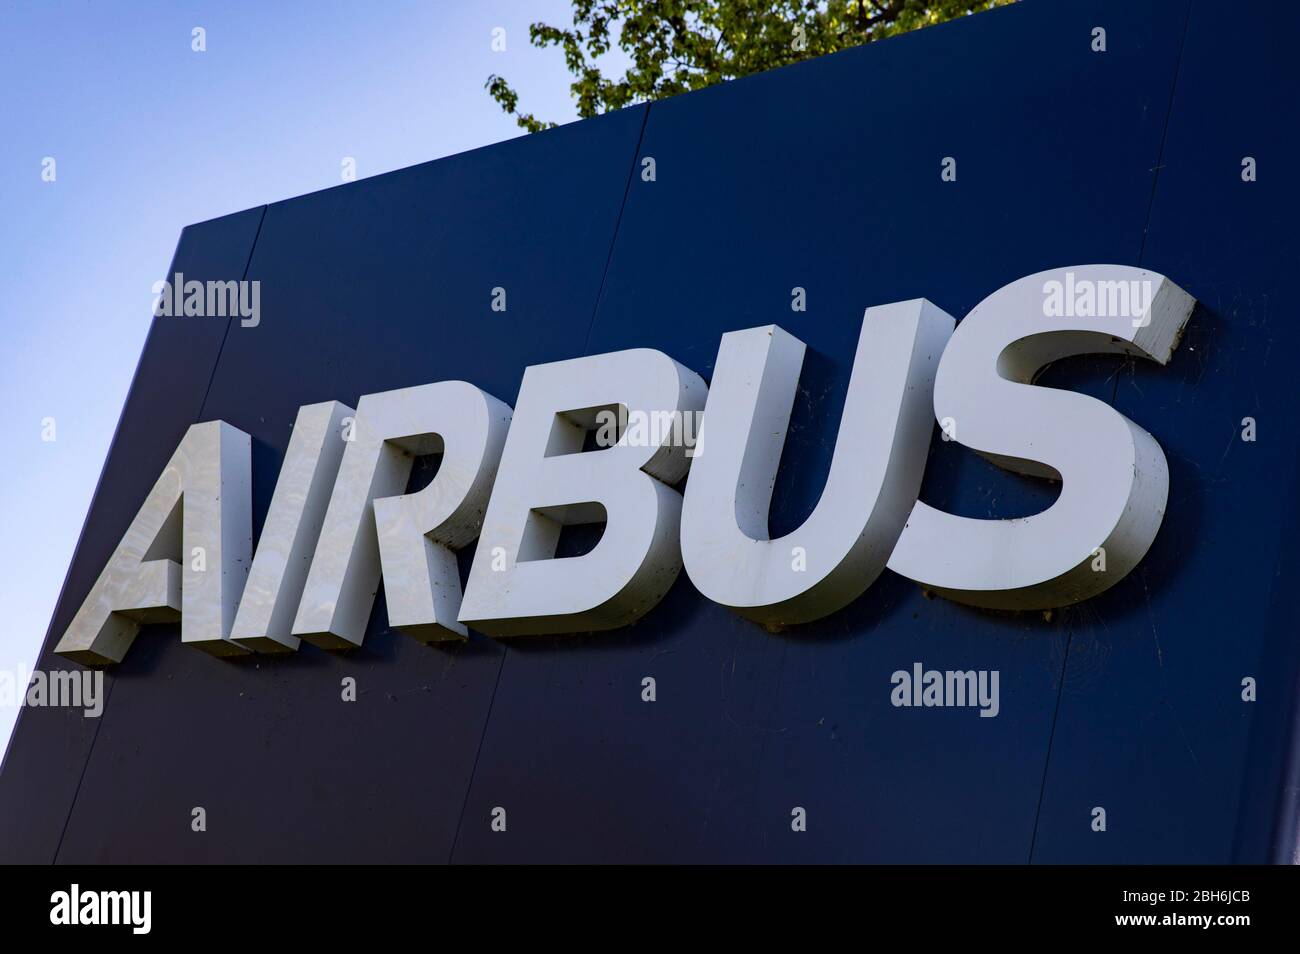 Immenstaad, Alemania. 23 de abril de 2020. Airbus ha cerrado la producción debido a la crisis de Corona. Immenstaad, 23 de abril de 2020 | uso en todo el mundo crédito: dpa/Alamy Live News Foto de stock